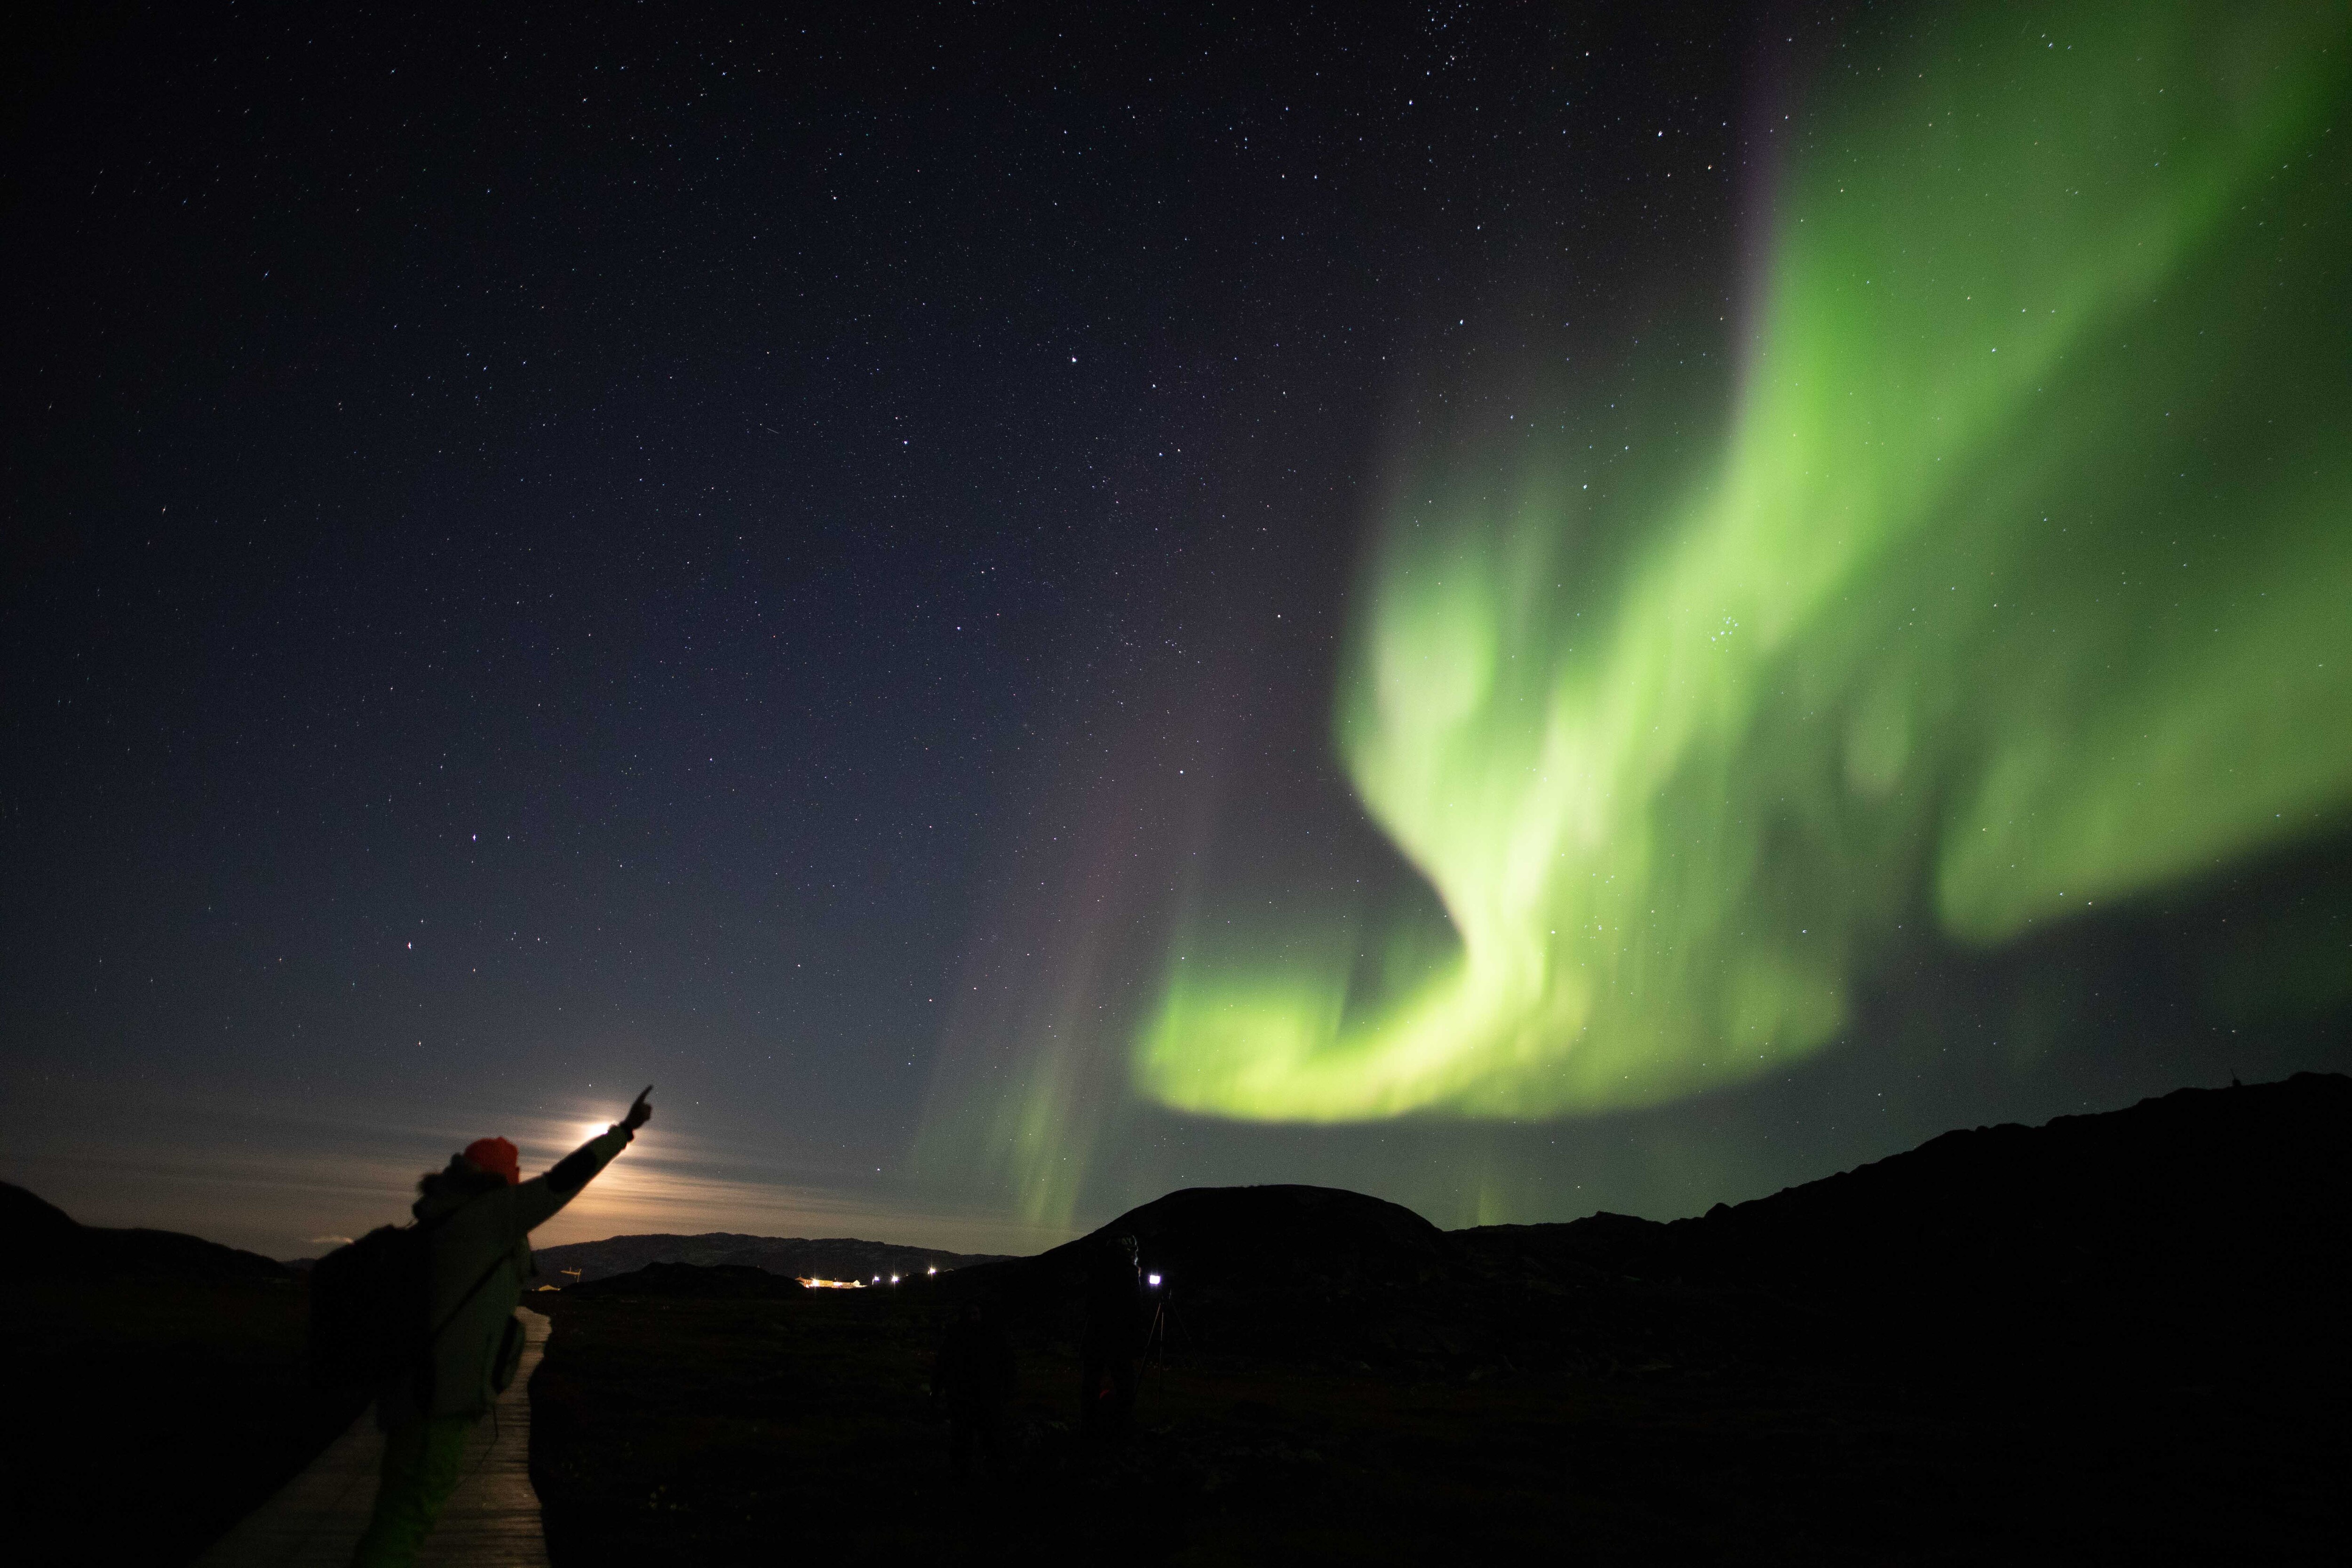 Moradores do Alasca registram aurora boreal; veja imagens do fenômeno